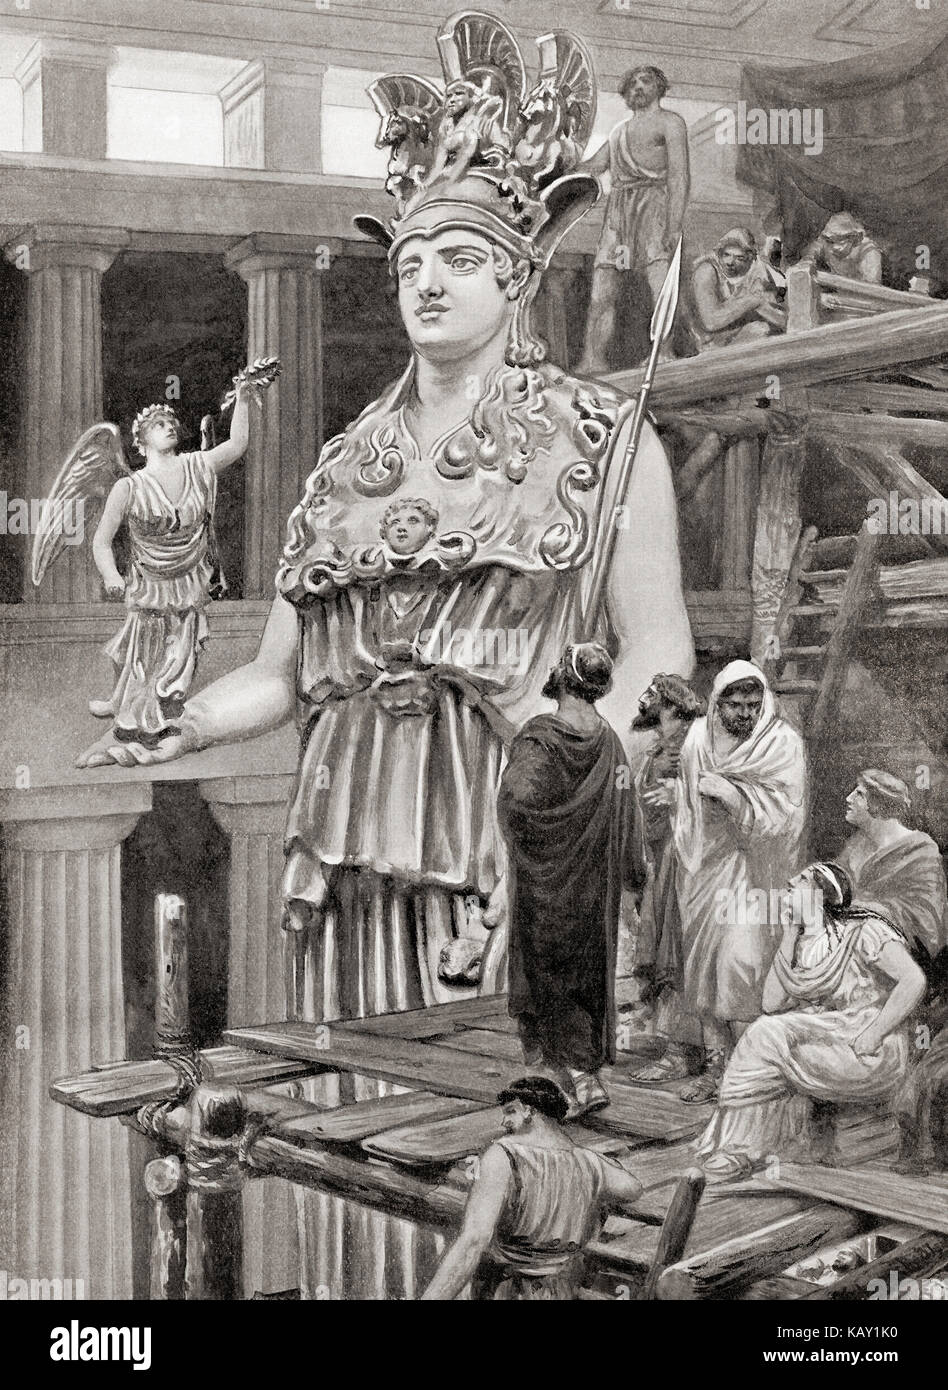 Fidia e i suoi assistenti al lavoro sulla statua della dea Athena nel  Partenone riceve la visita di Pericle. Fidia o pheidias, c. 480 - 430 a.c.  scultore greco, pittore e architetto.